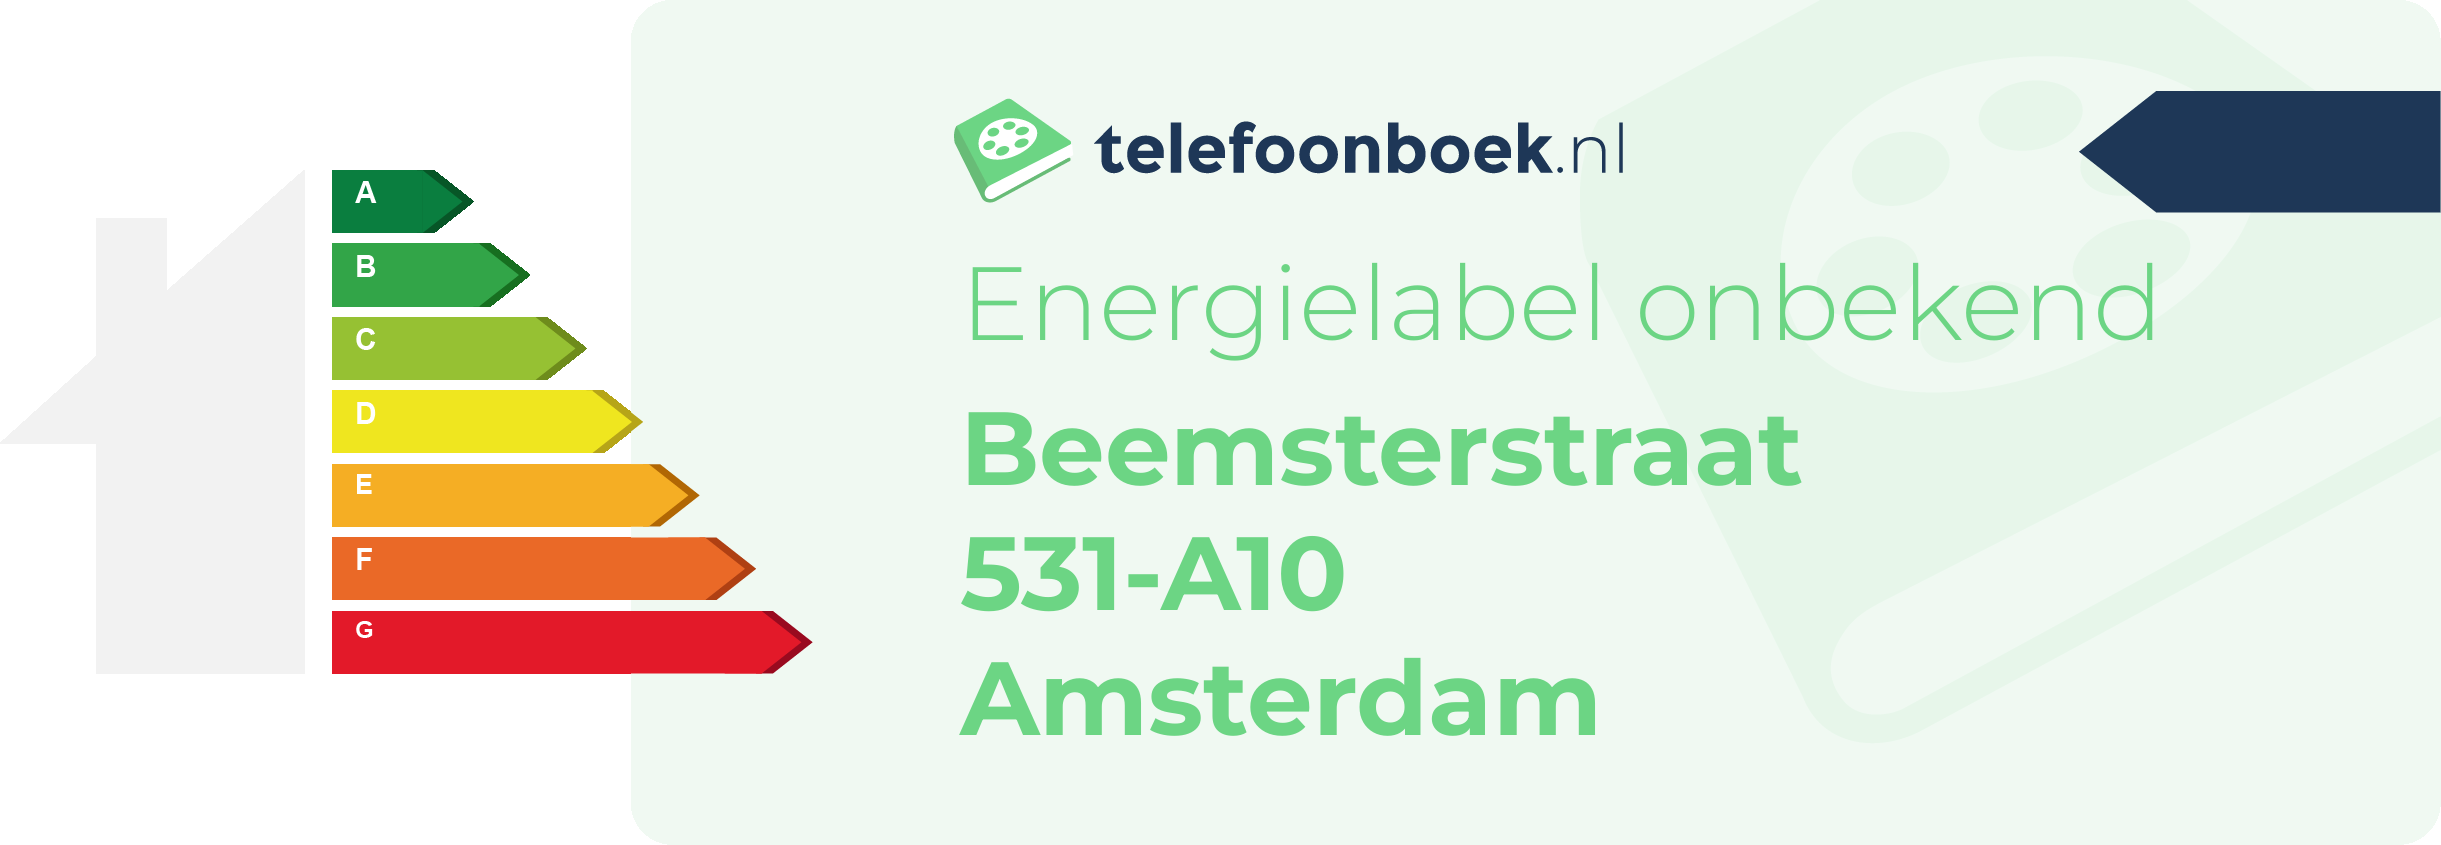 Energielabel Beemsterstraat 531-A10 Amsterdam